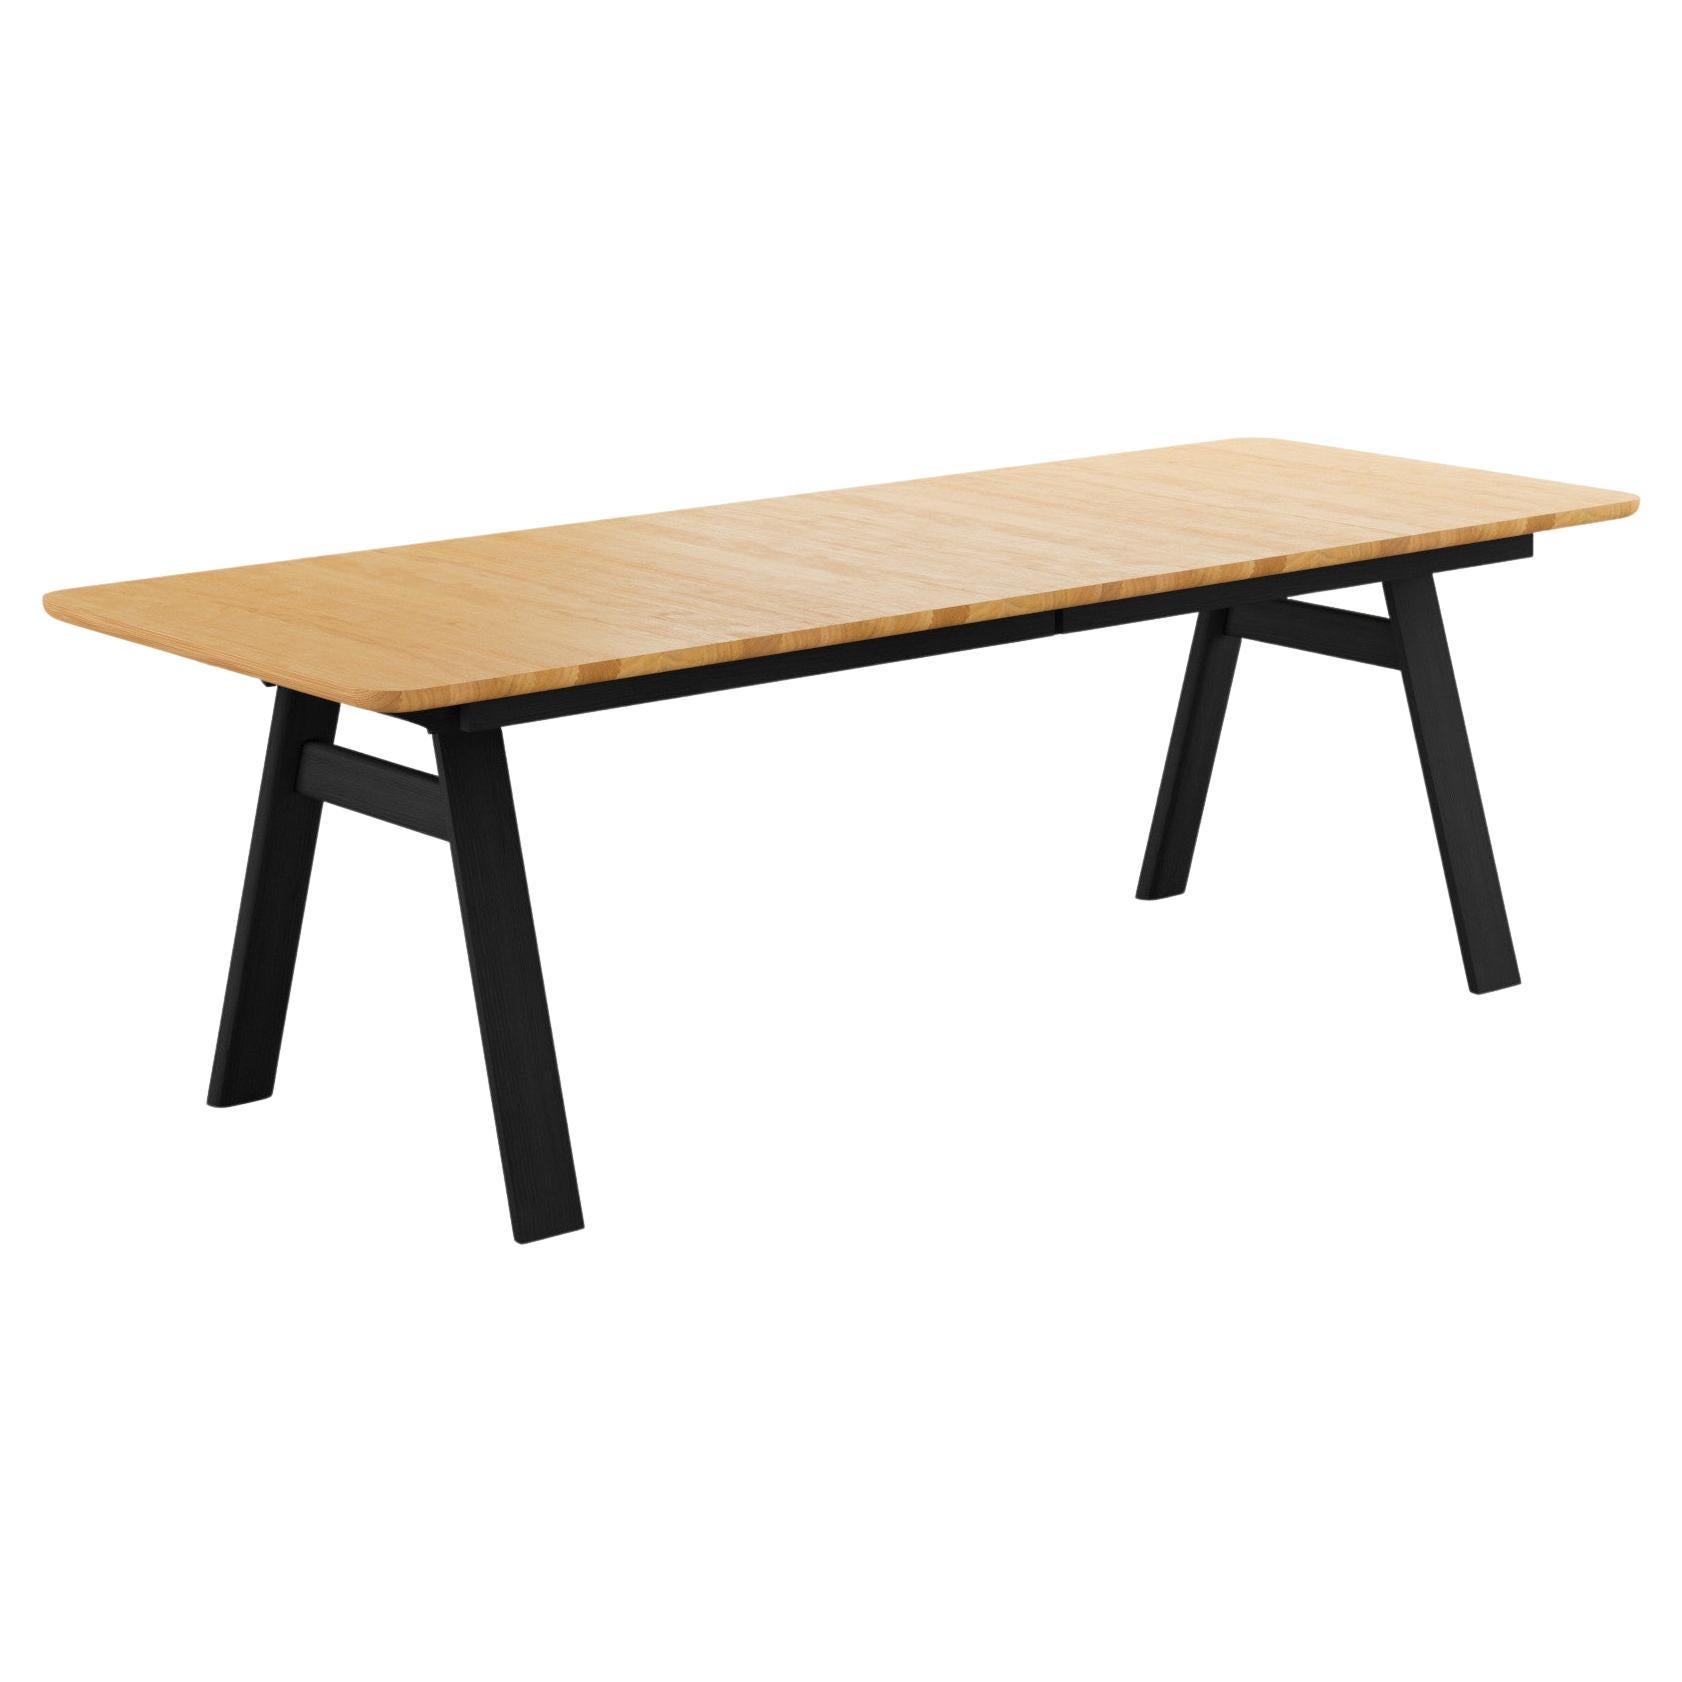 GM3420 Chess Table, Oak oil, Black wooden legs - Design by Nissen & Gehl MDD For Sale